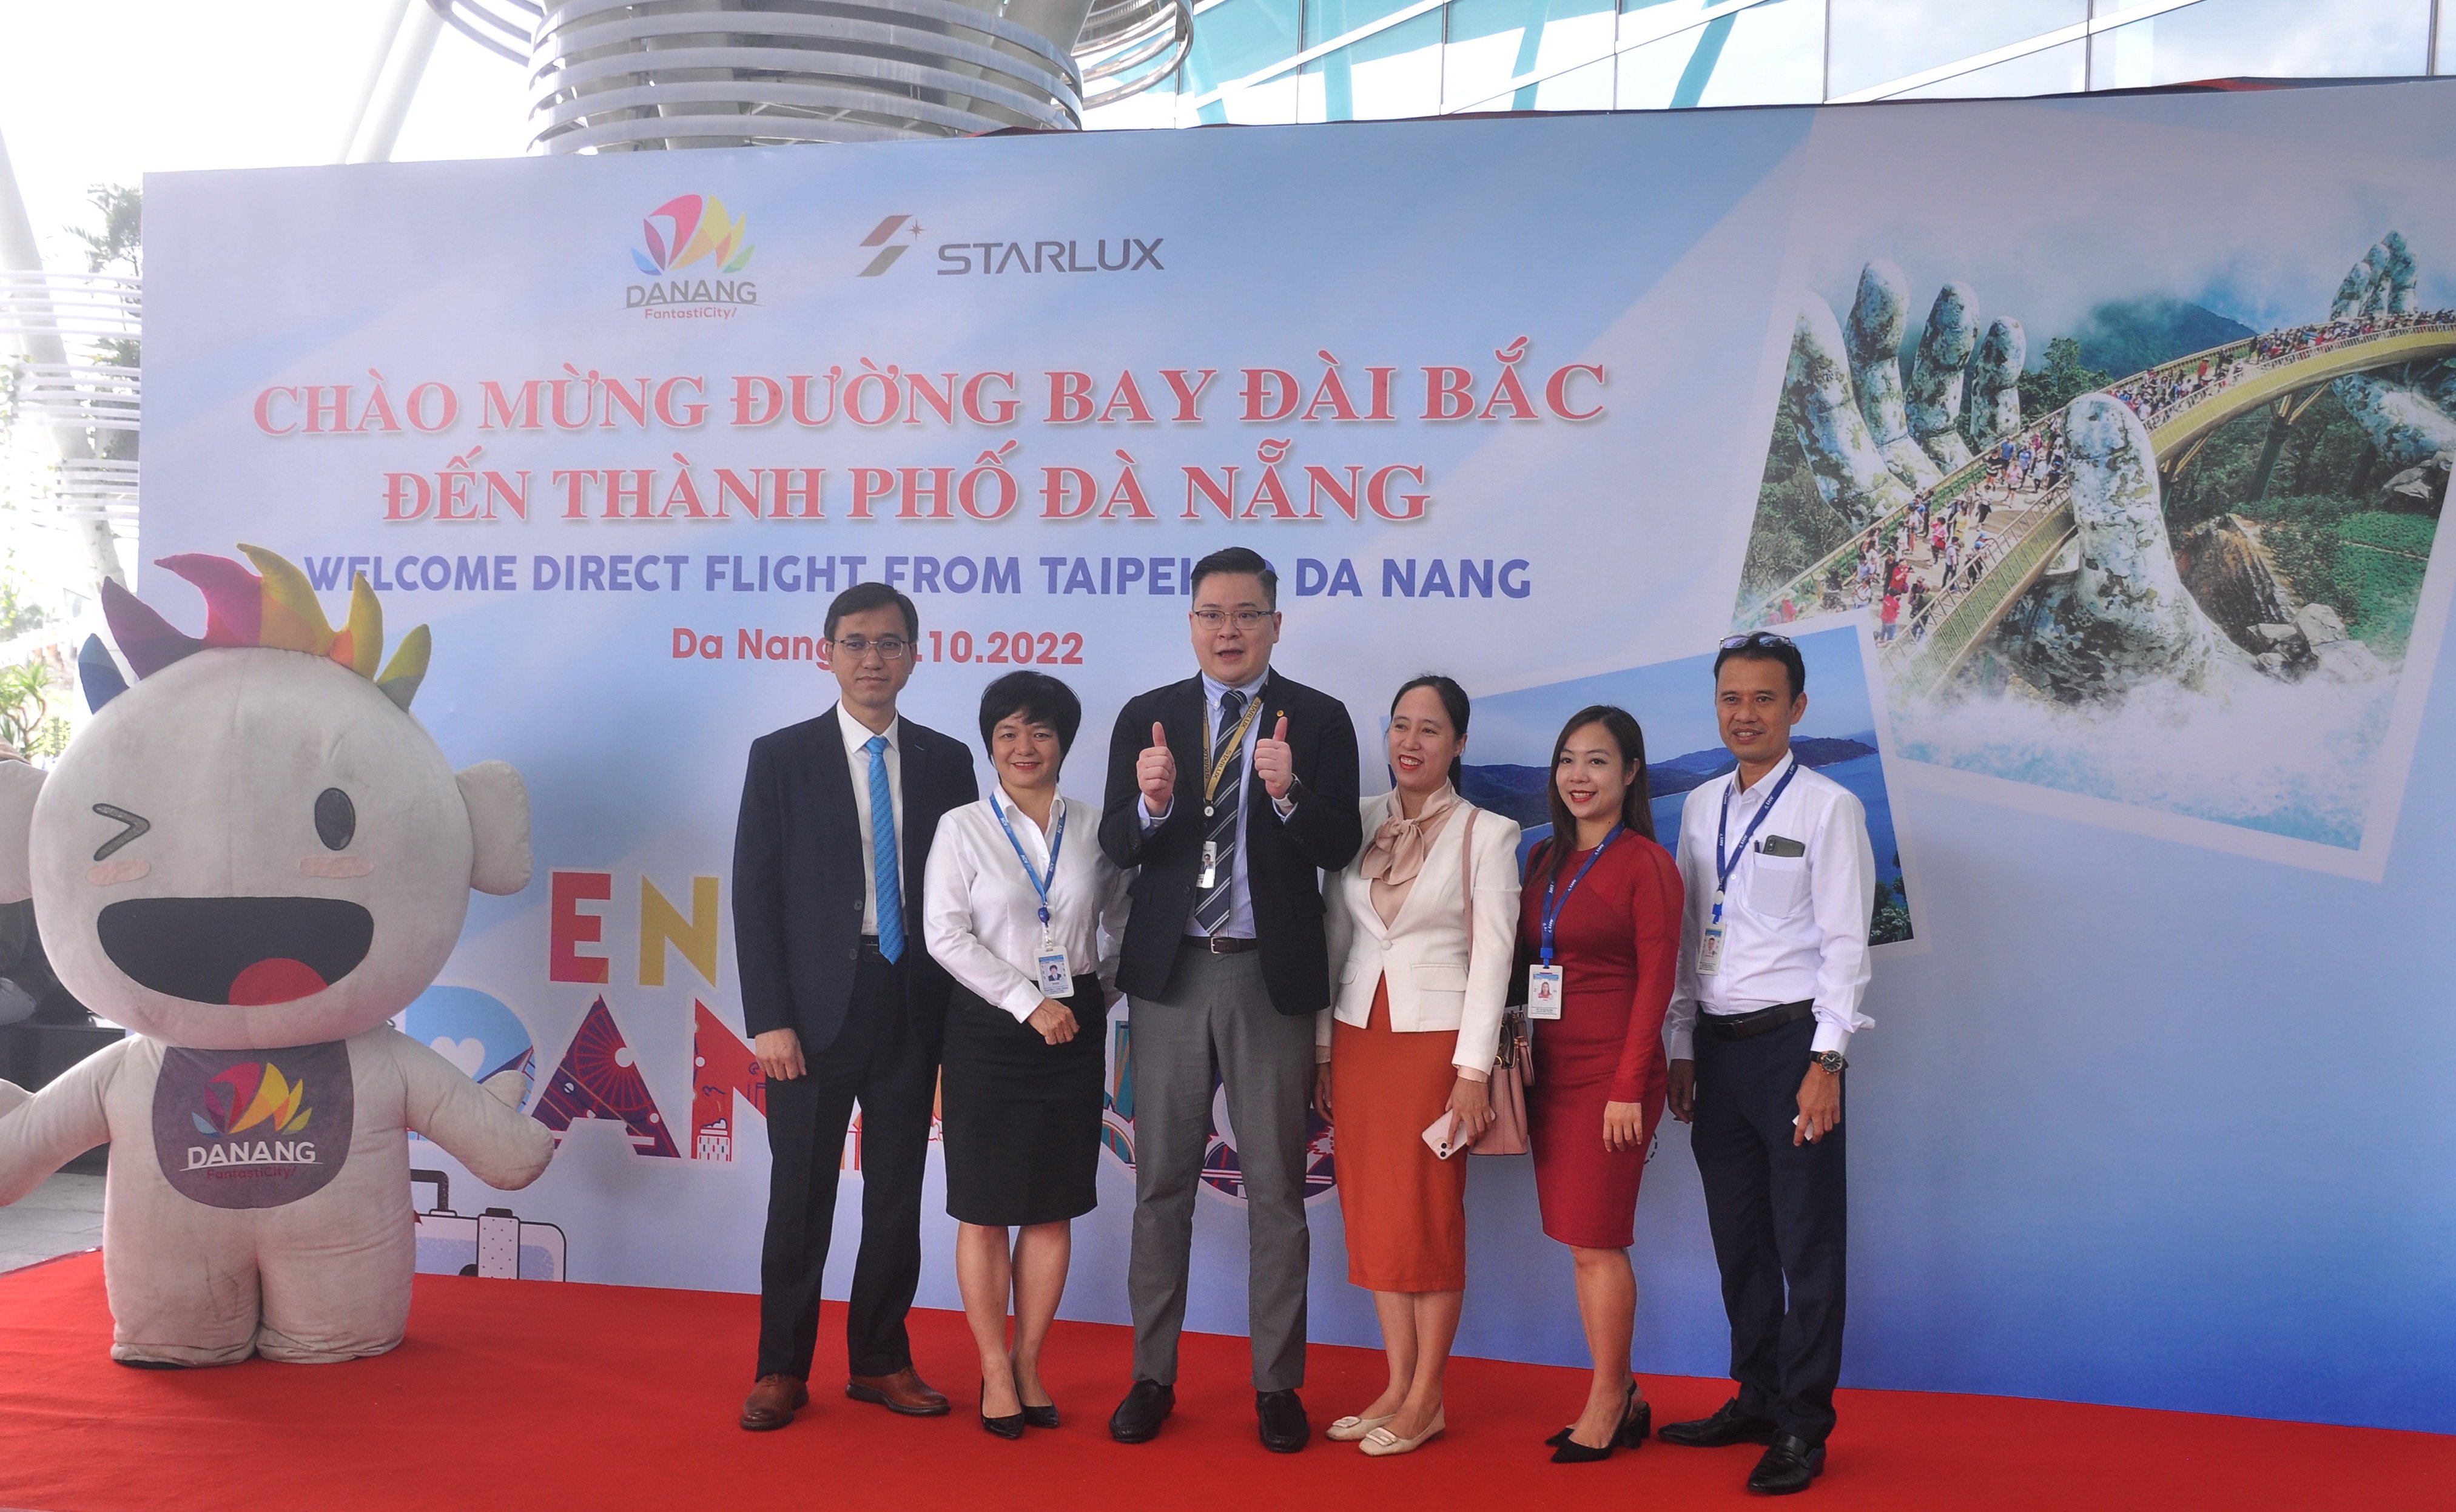 Hãng hàng không Starlux sẽ khôi phục lại chuyến bay giữa Đài Bắc và Đà Nẵng từ ngày 28/10